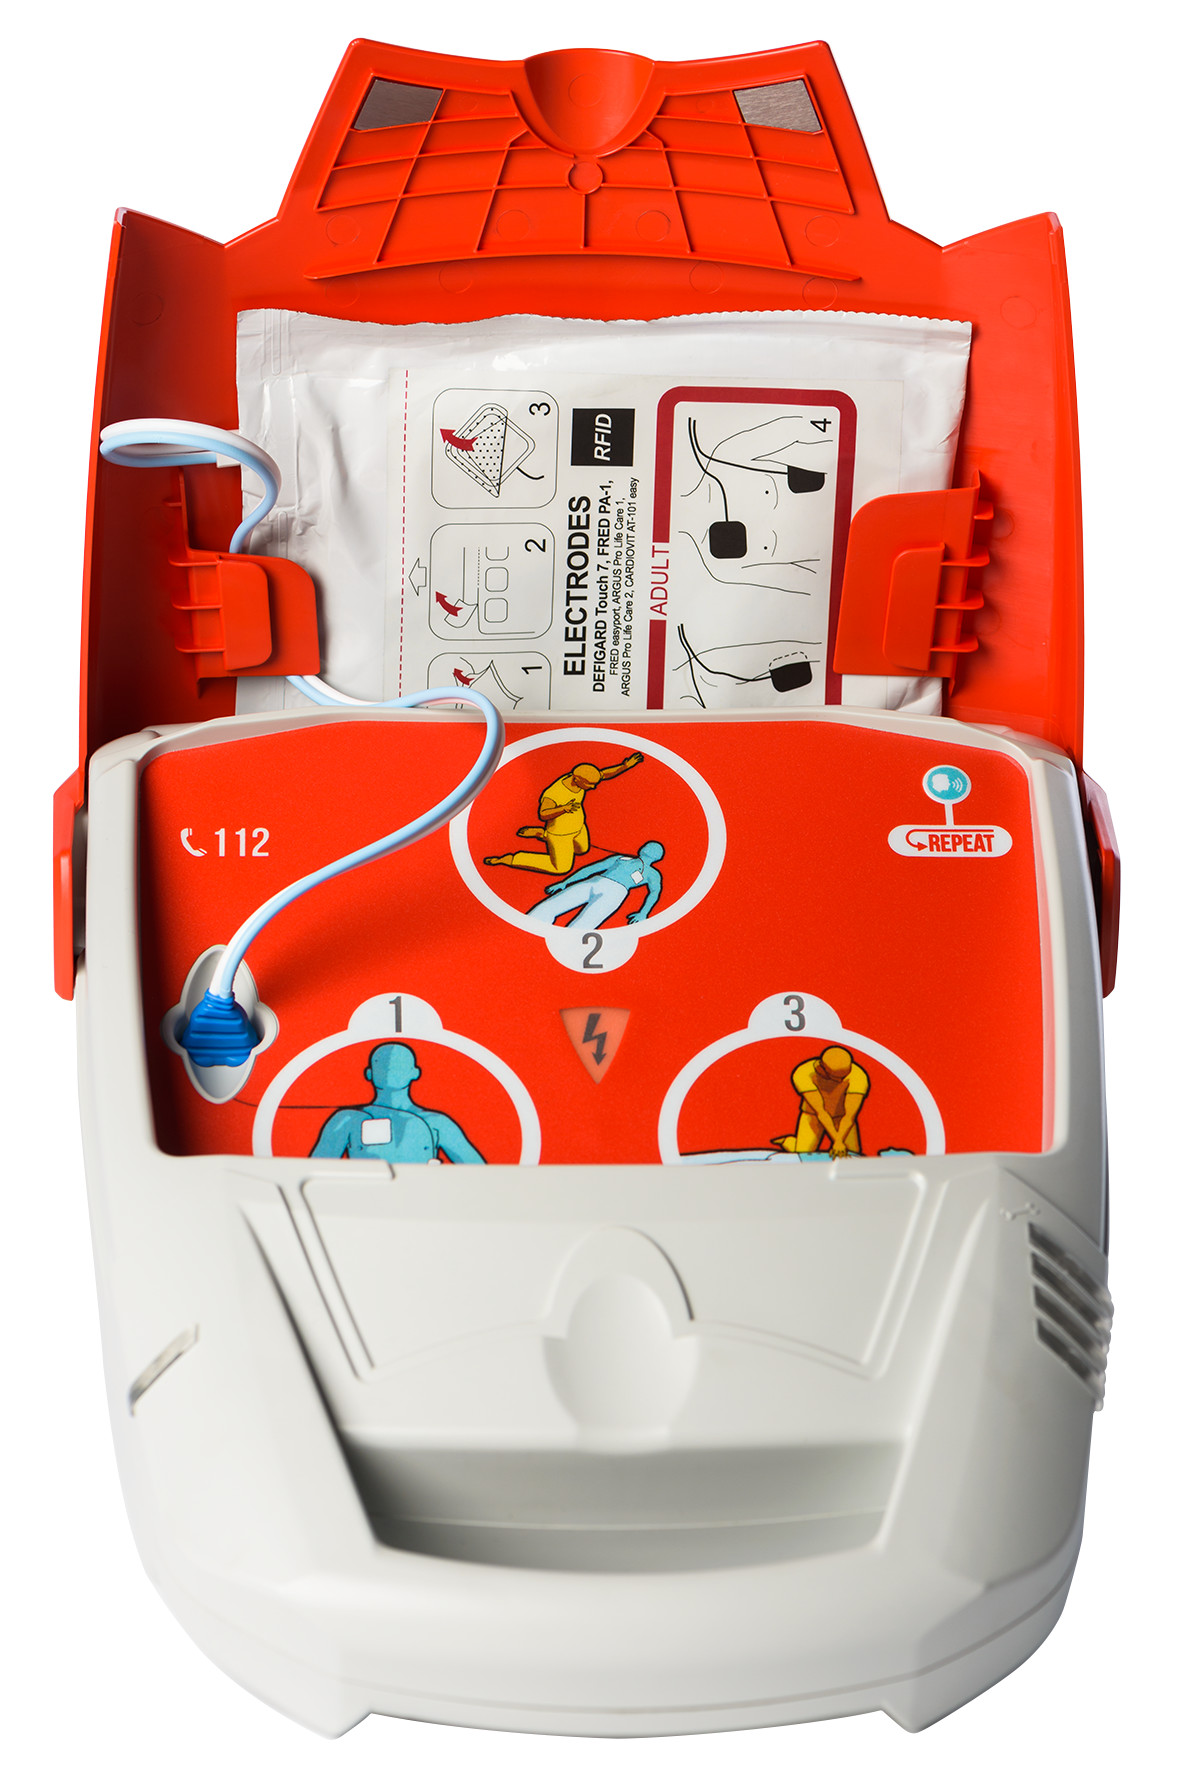 Schiller Fred PA-1 defibrillator - semi-automatisch - Meertalig